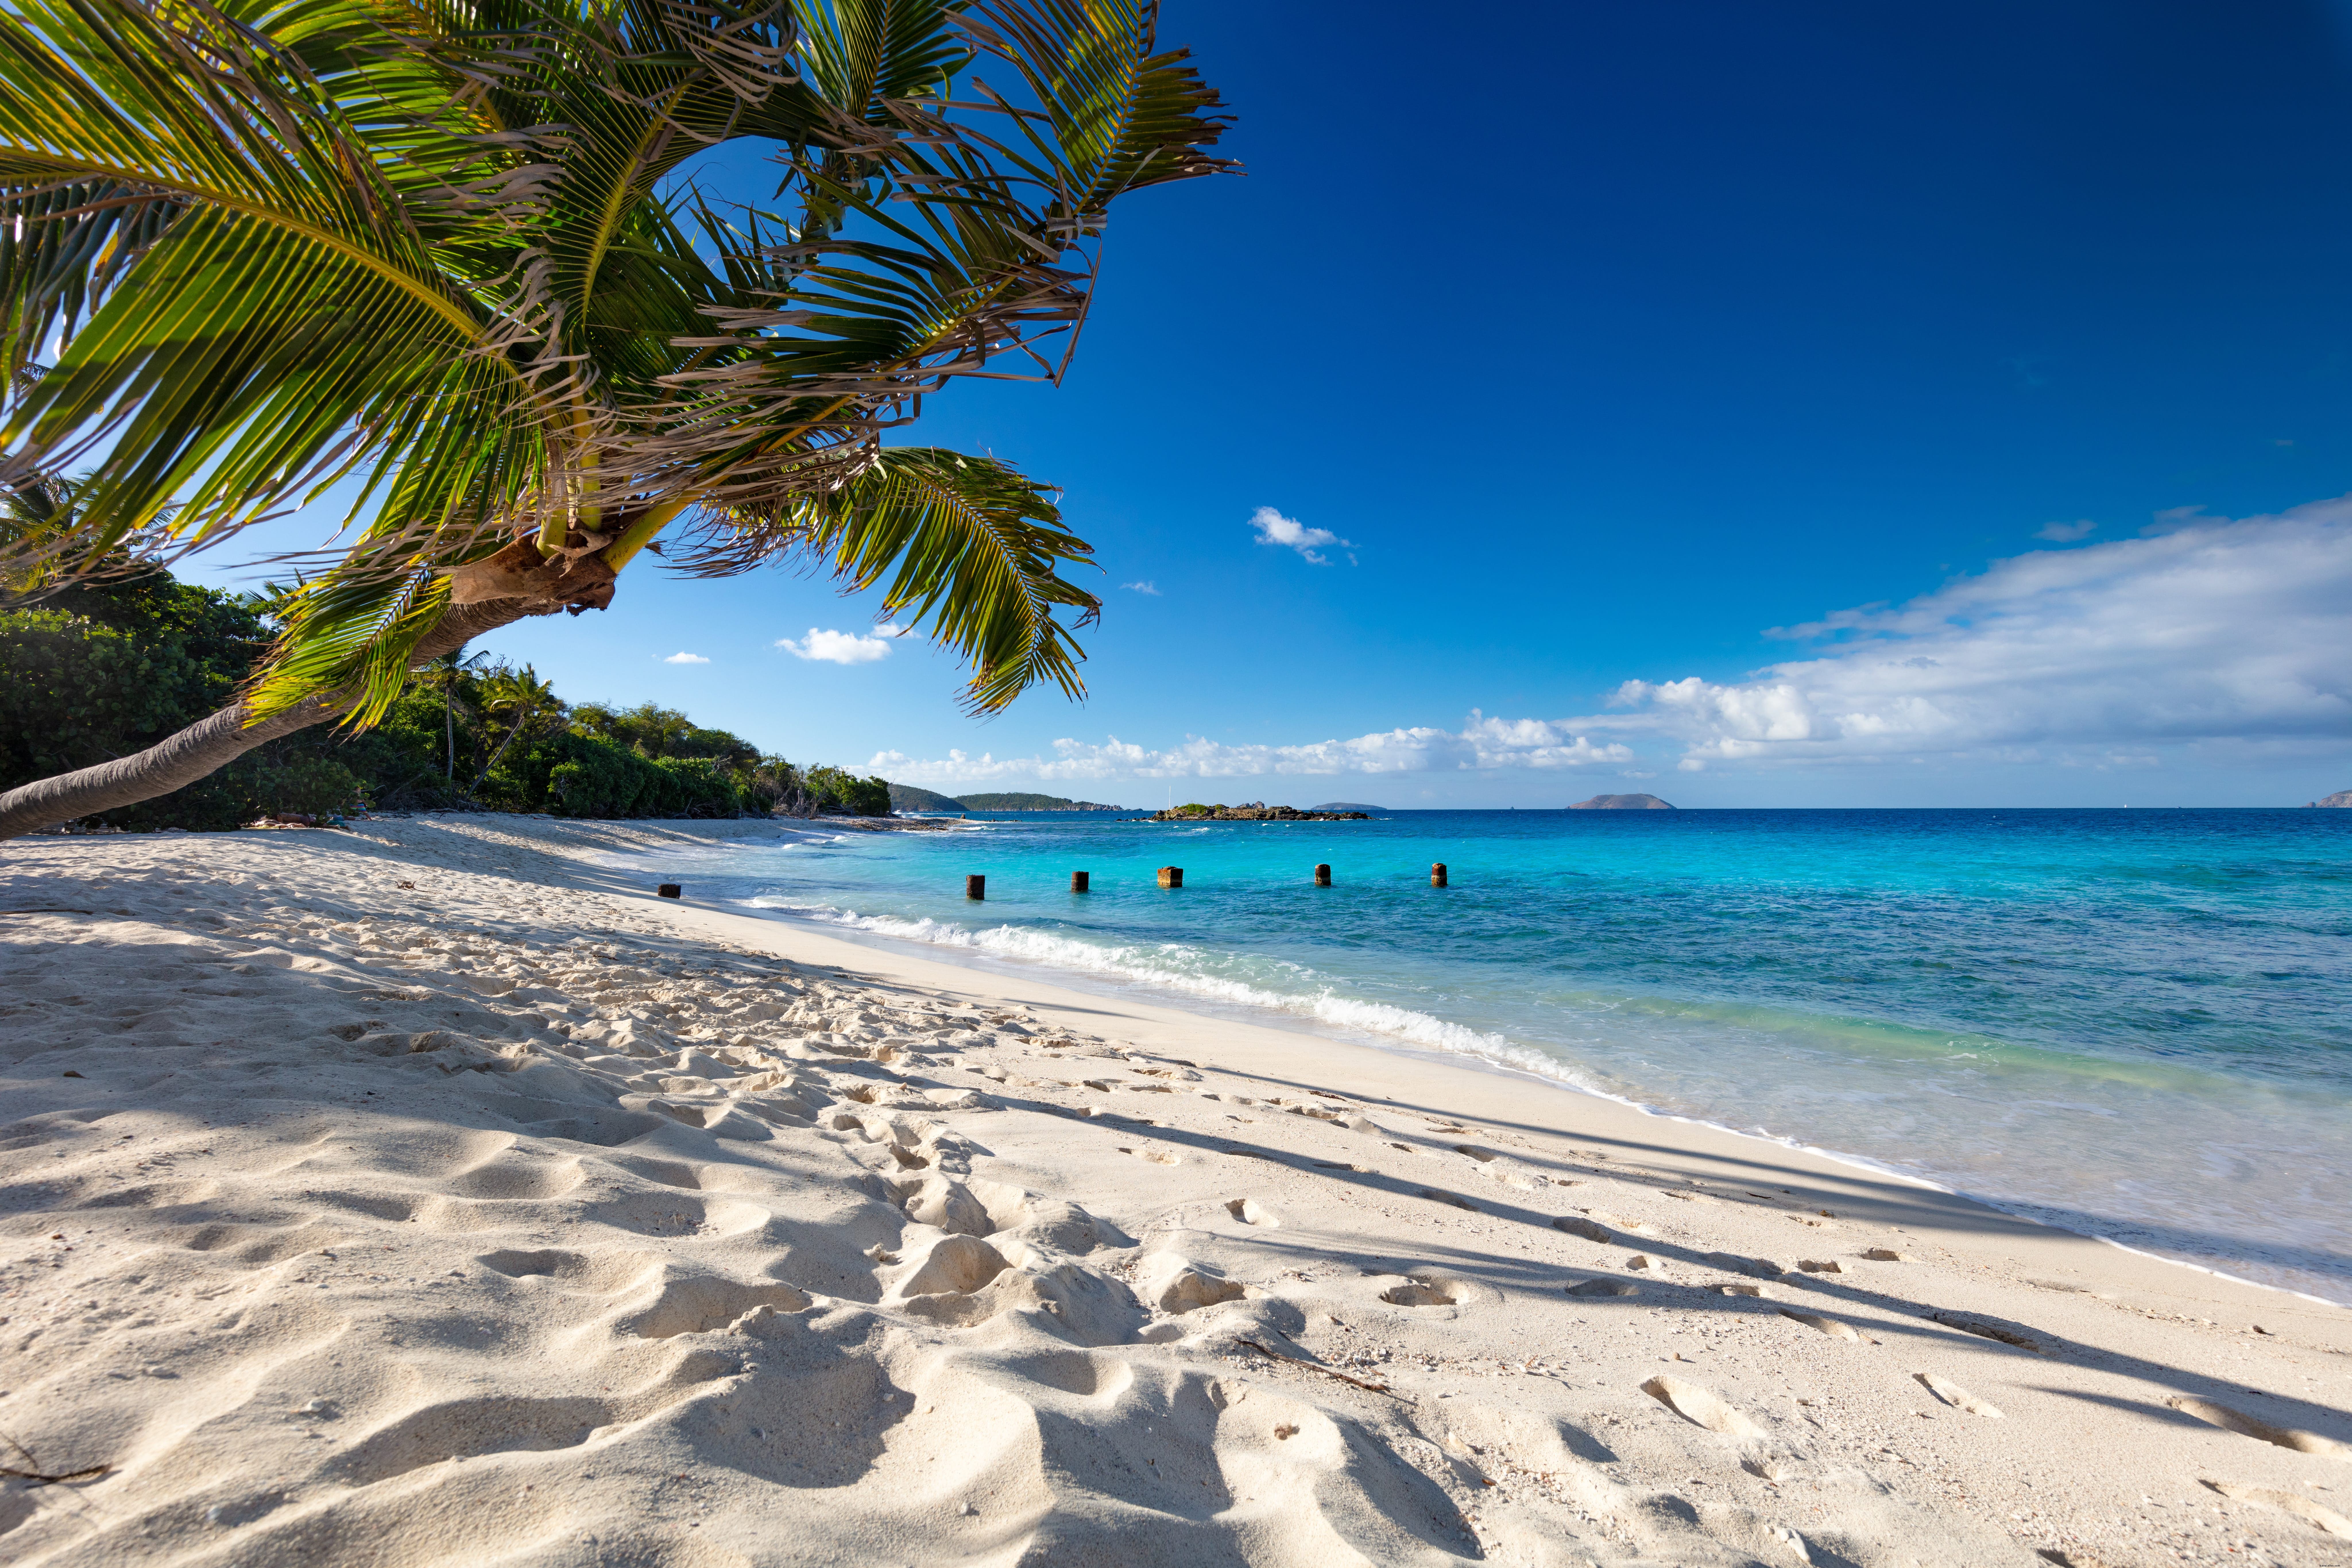 Berikut adalah aturan baru untuk mengunjungi Karibia 